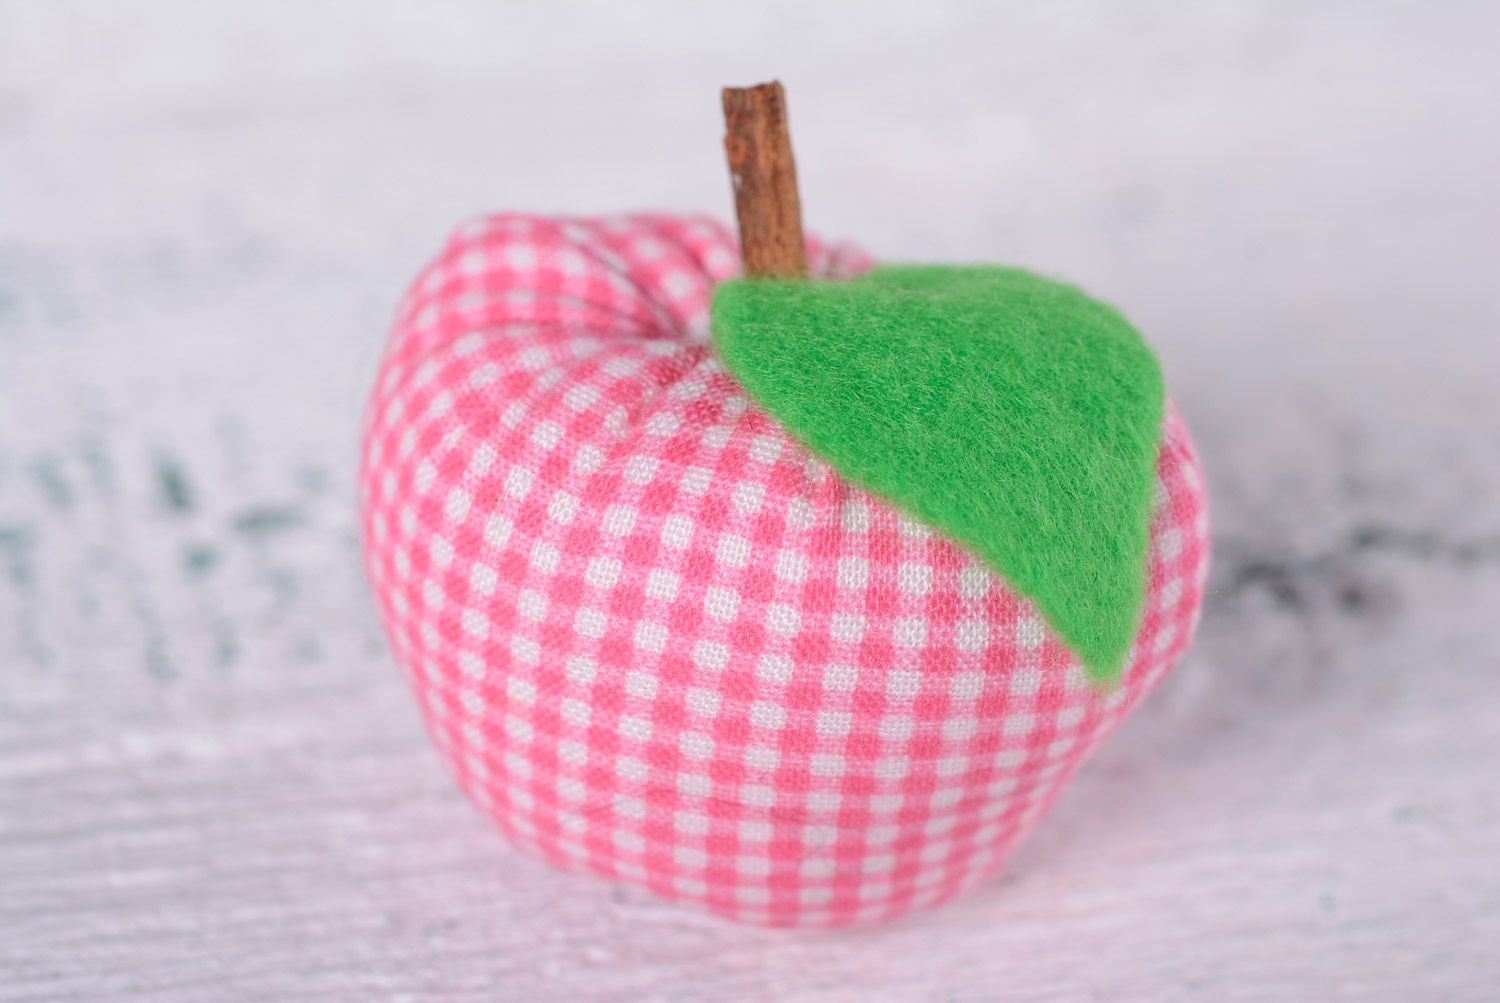 Декоративная игрушка для интерьера в виде маленького яблока мягкая пошитая вручную фото 2